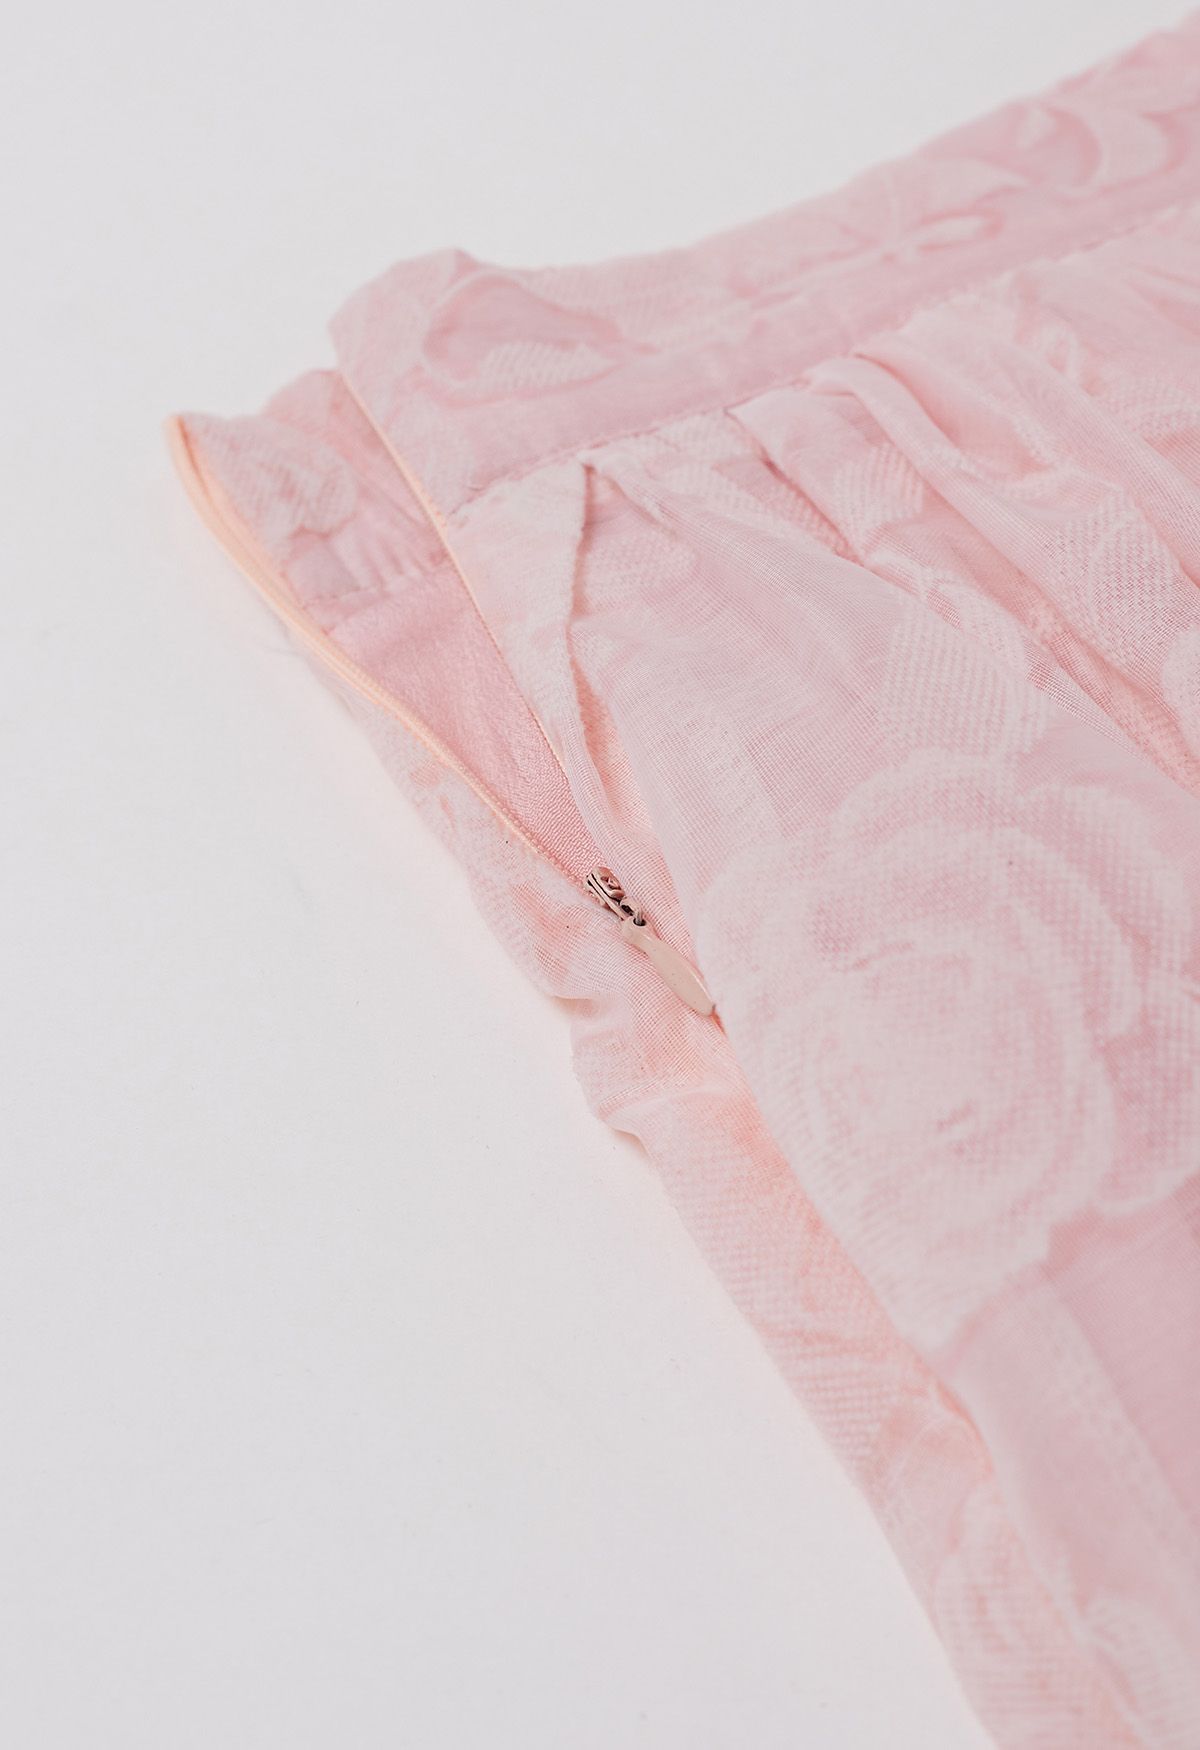 Falda midi de organza con textura de rosa de terciopelo en rosa